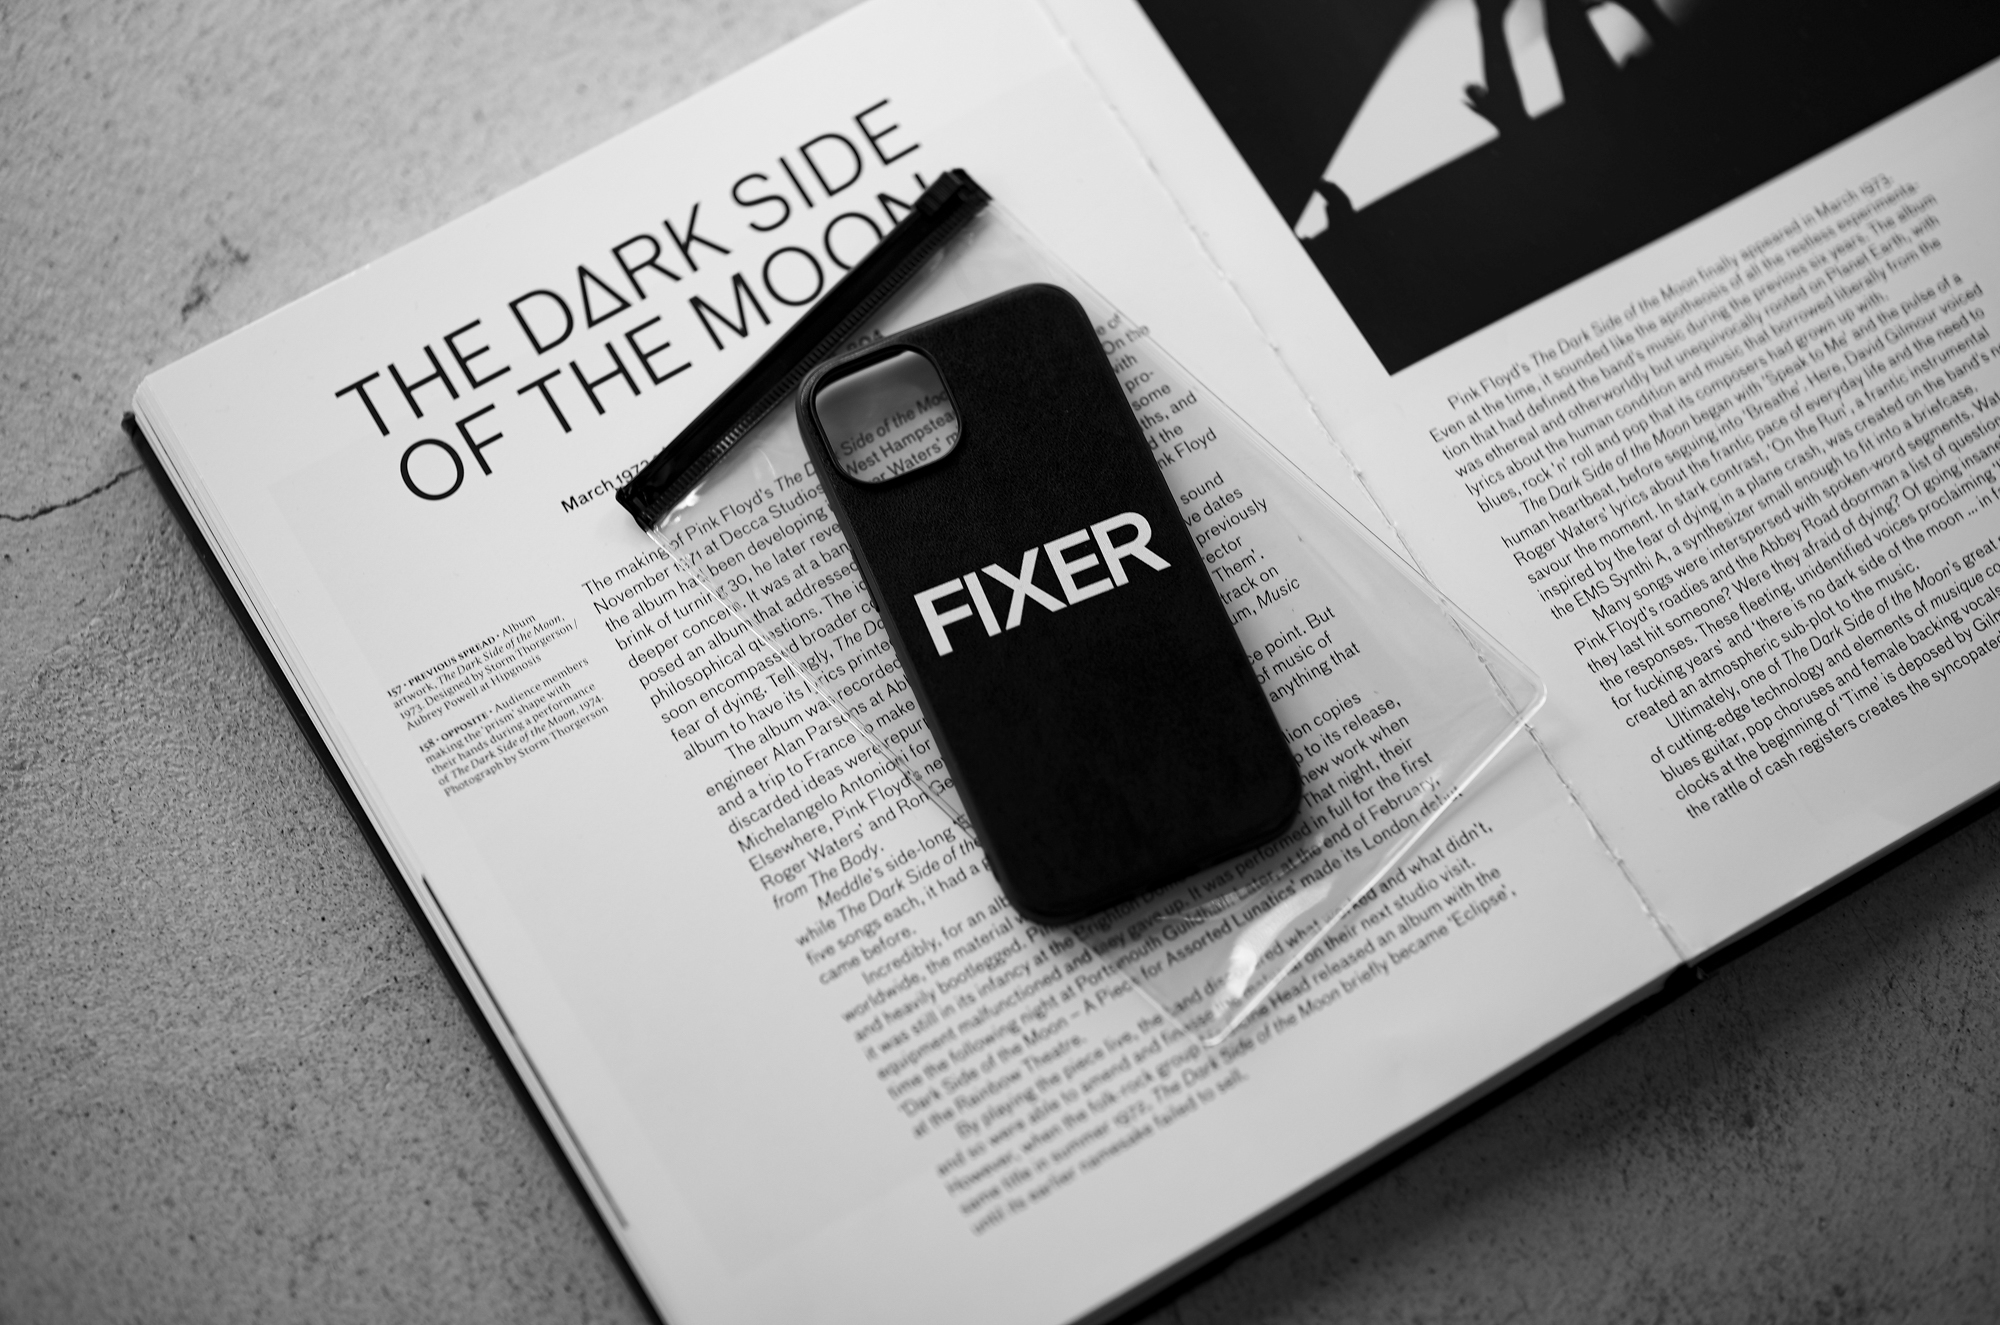 FIXER "iPhone 14 Case" BLACK × WHITE フィクサー アイフォンケース 携帯ケース ノーマルケース クロコダイルケース ブラック ブラック ホワイト オールブラック 愛知 名古屋 Alto e Diritto altoediritto アルトエデリット